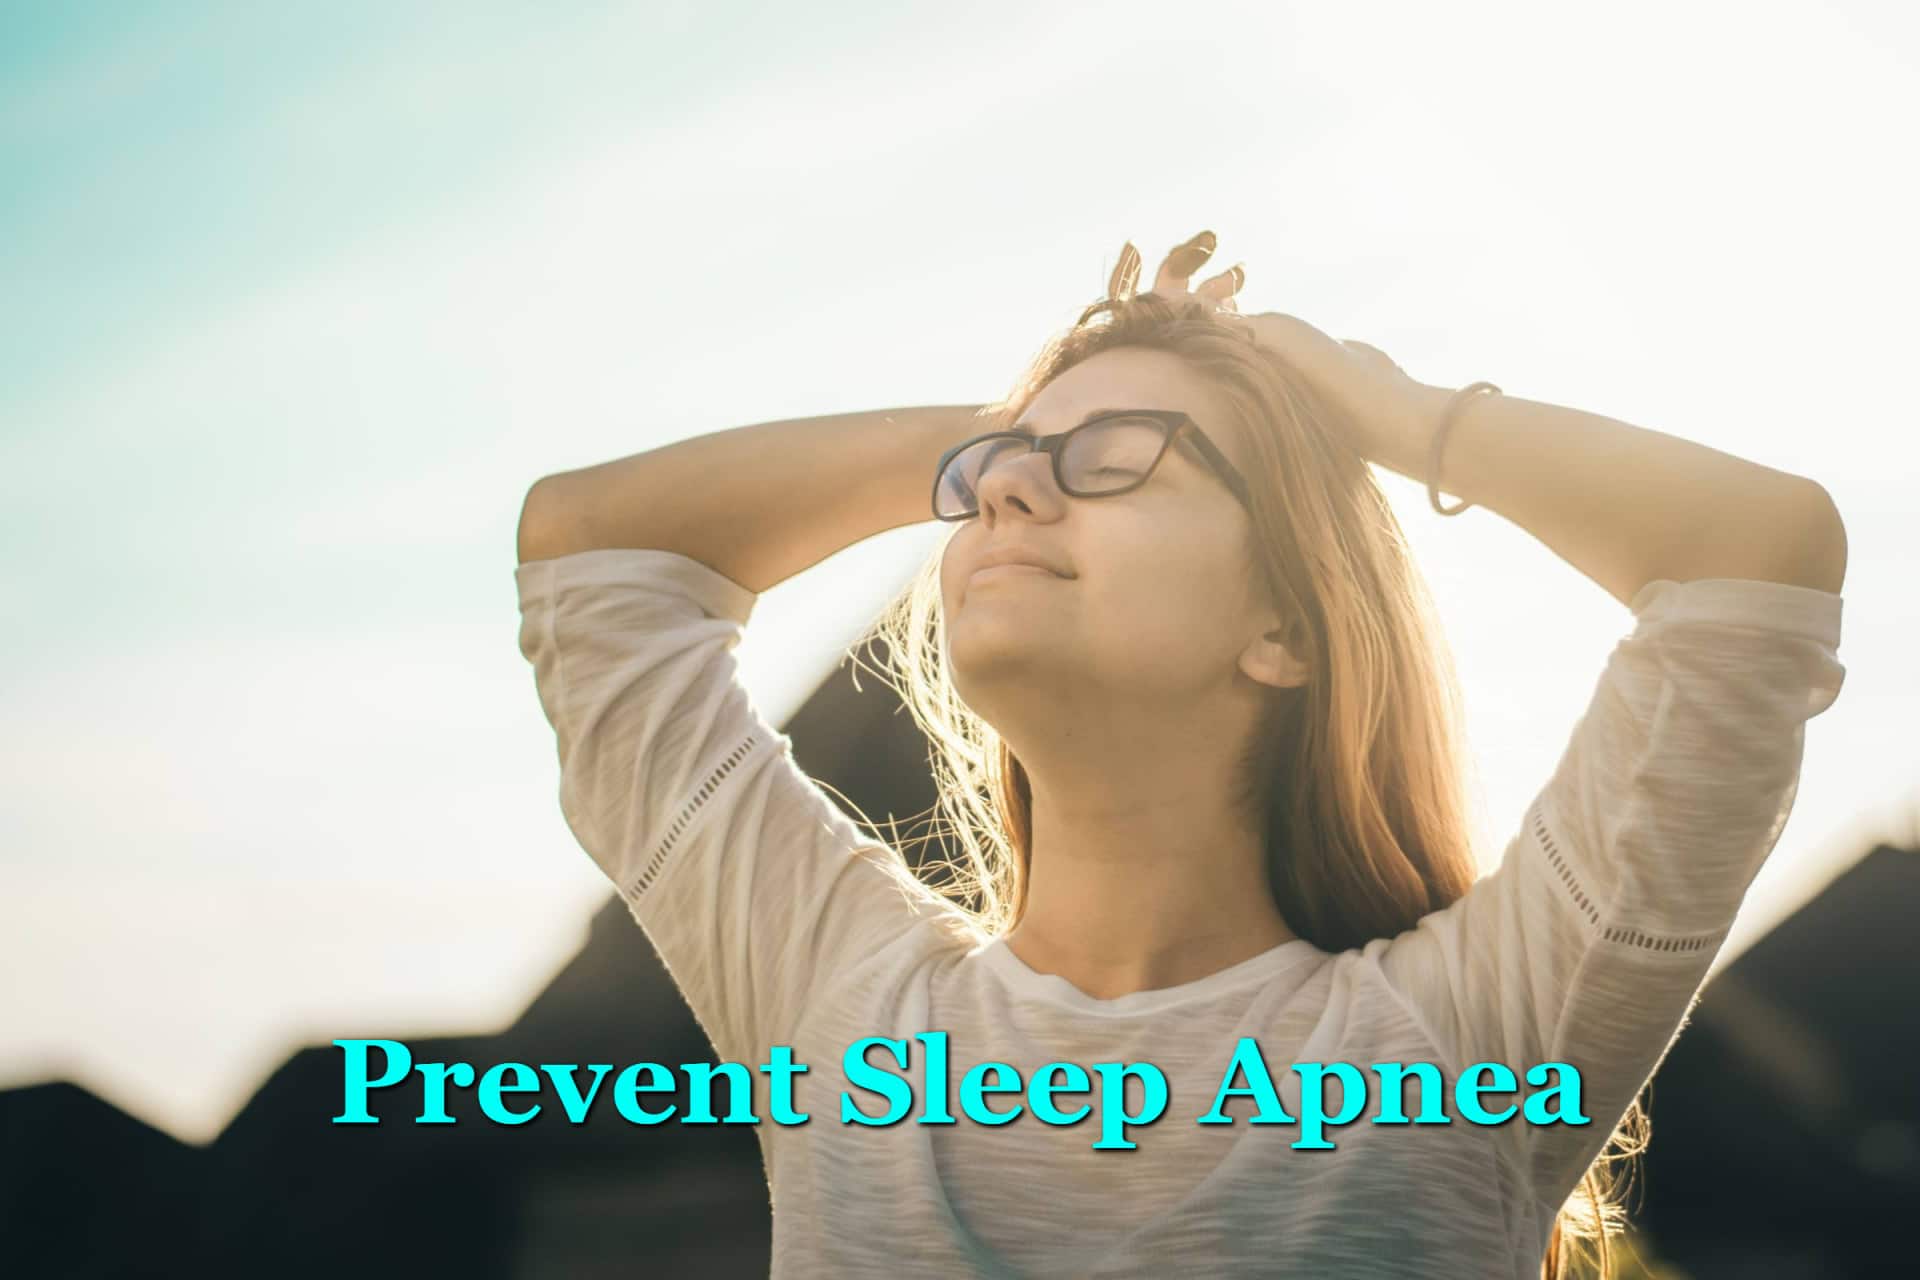 How Can I Prevent Sleep Apnea?